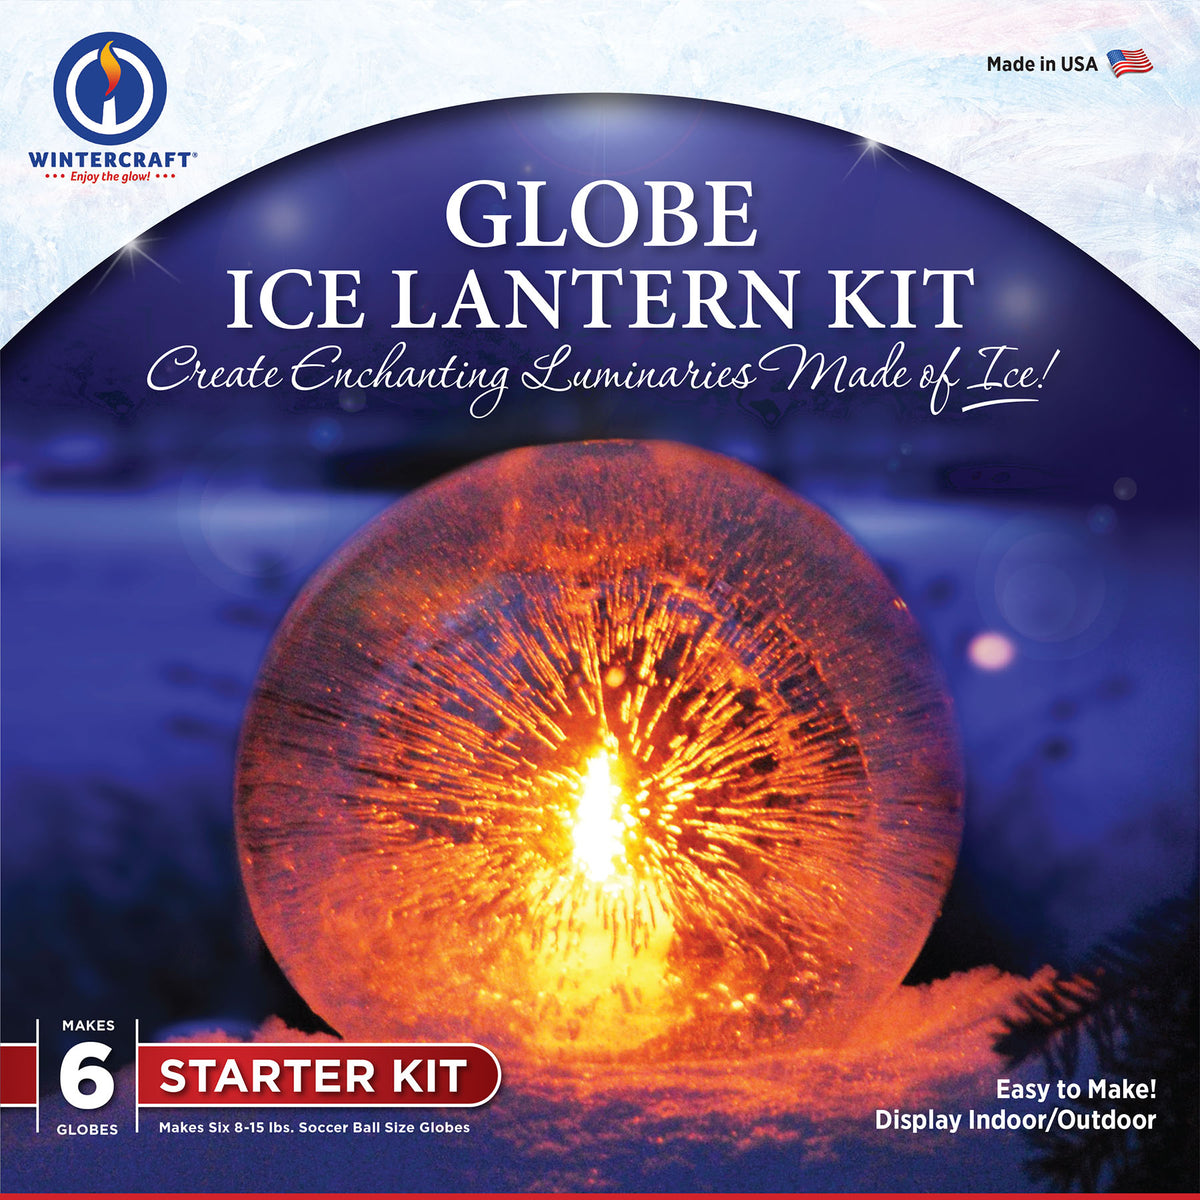 Starter Kit - Makes 6 Globe Ice Lanterns